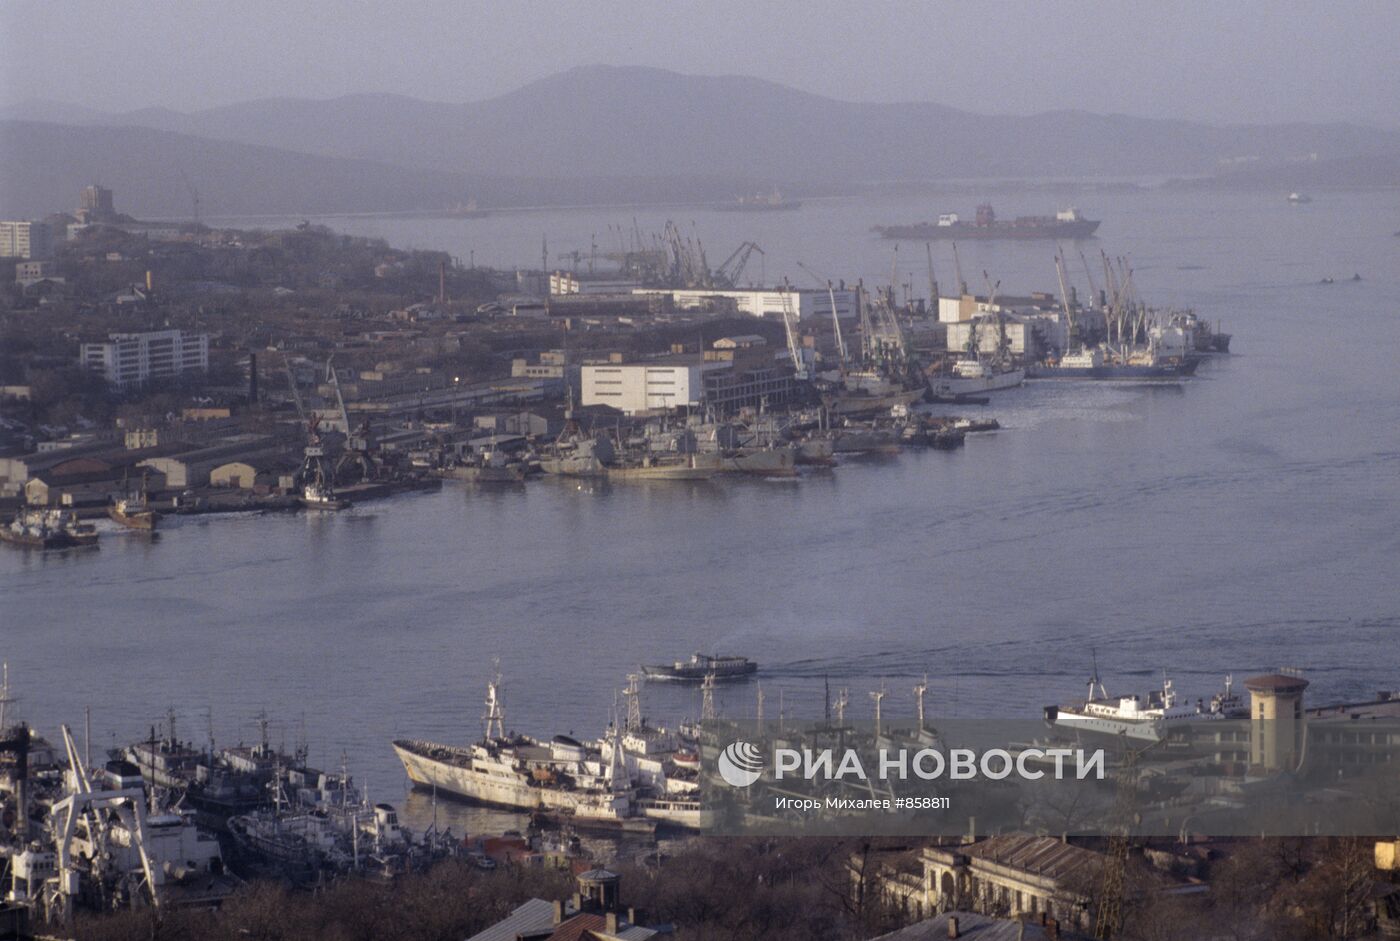 Владивосток — город и порт на Дальнем Востоке России